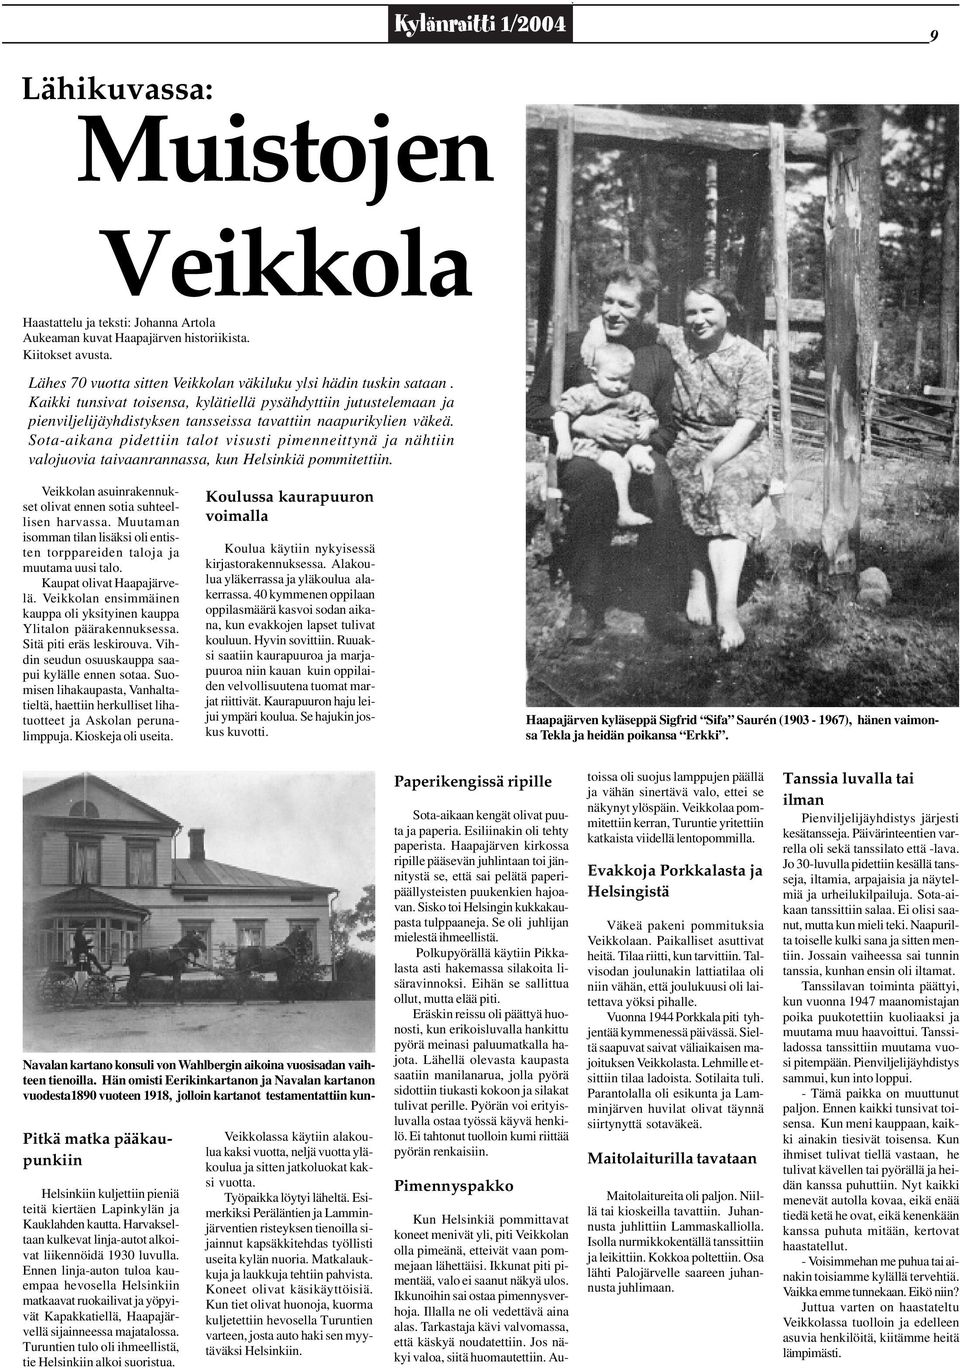 Sota-aikana pidettiin talot visusti pimenneittynä ja nähtiin valojuovia taivaanrannassa, kun Helsinkiä pommitettiin. Veikkolan asuinrakennukset olivat ennen sotia suhteellisen harvassa.